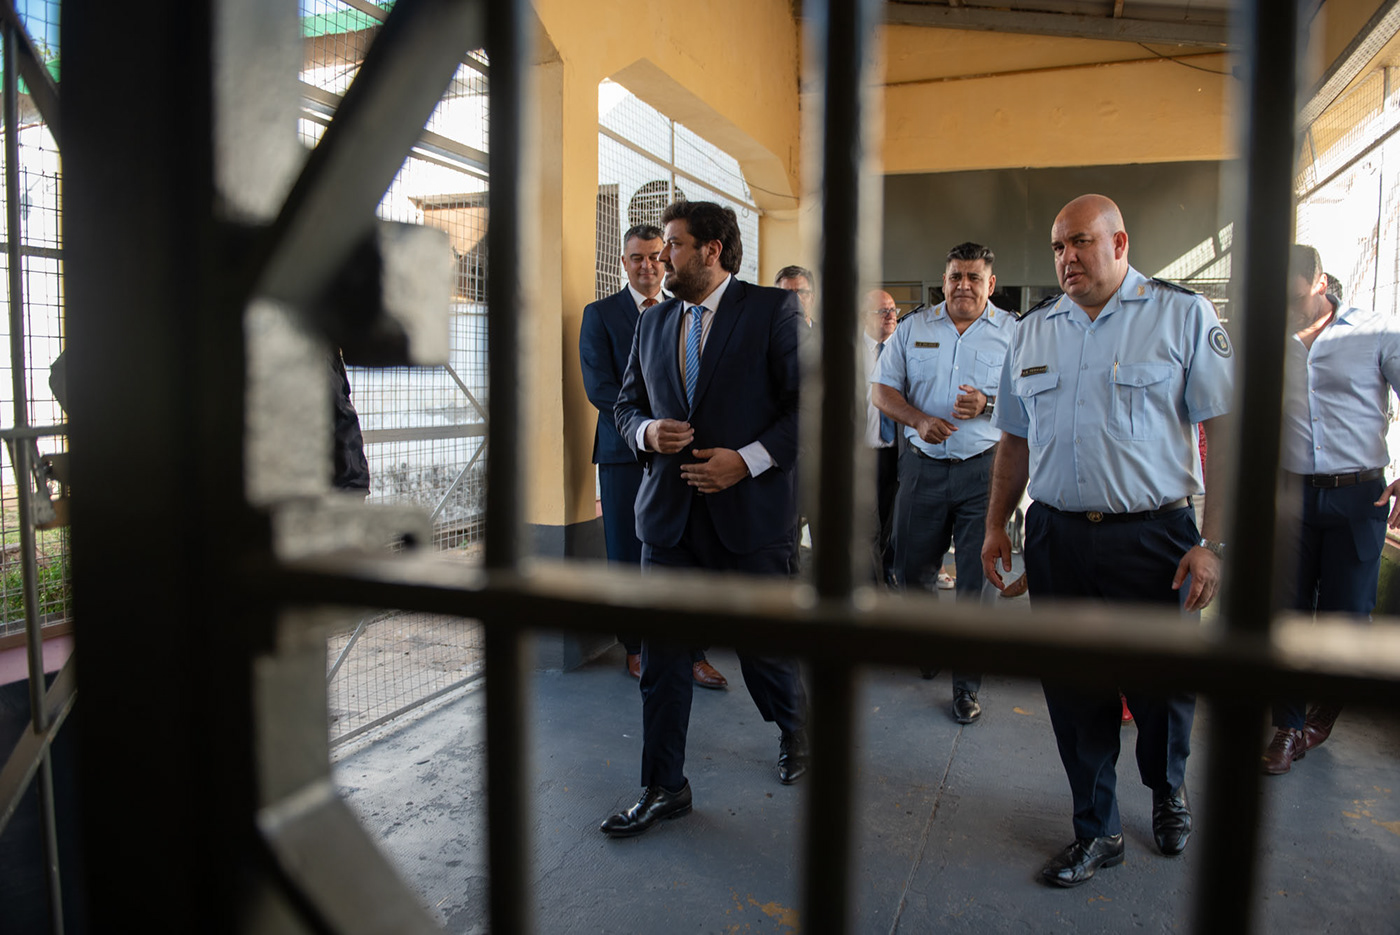 Fotoperiodismo carcel Prision Jail prison policia Politica argentina